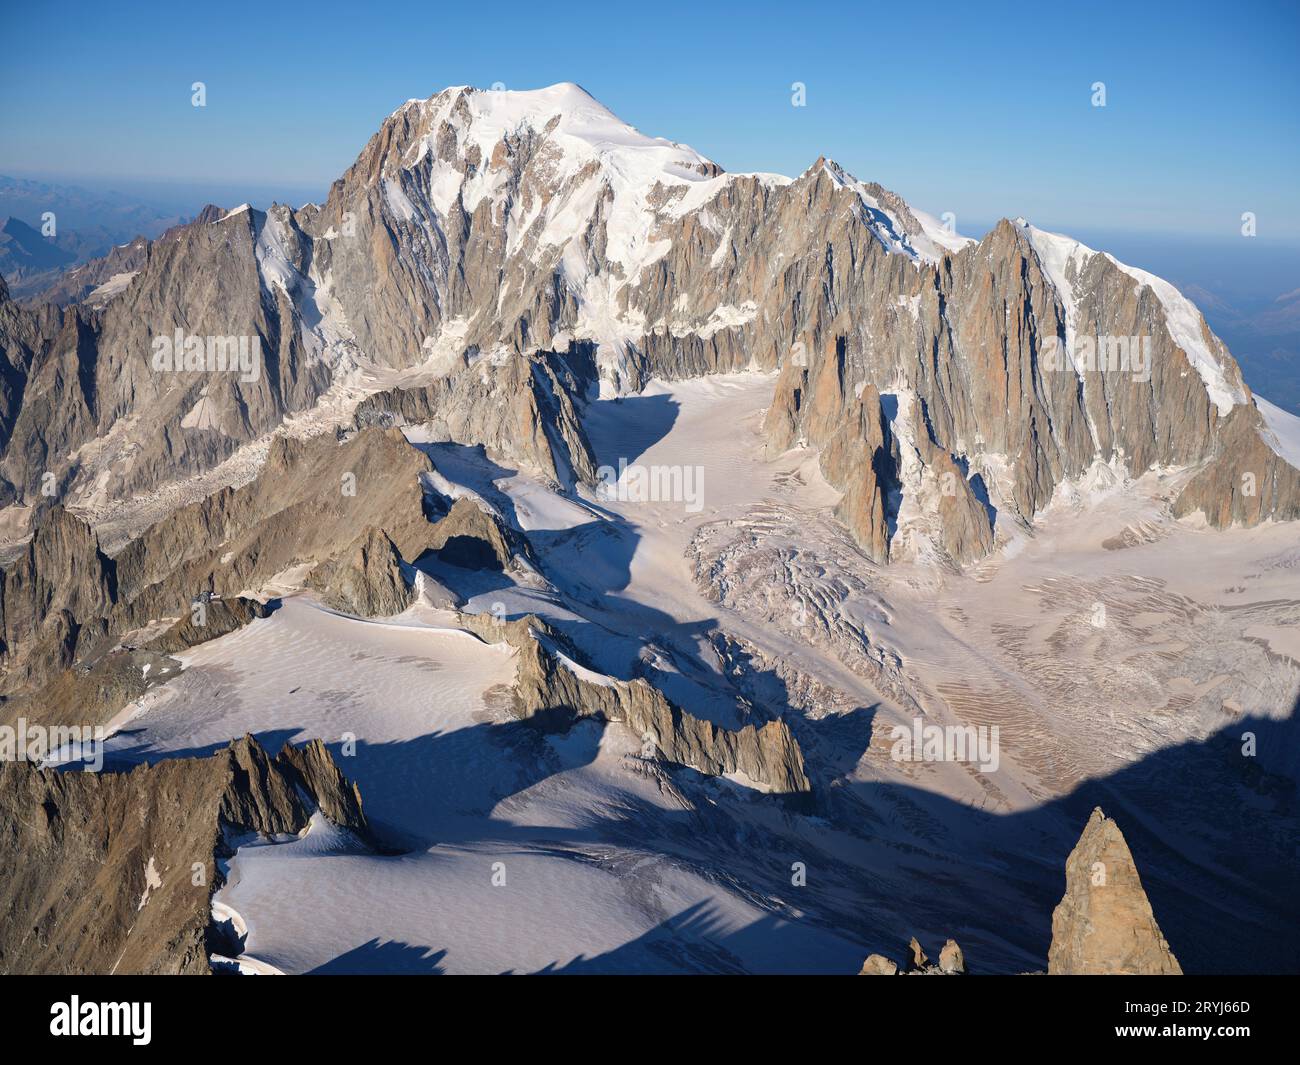 VUE AÉRIENNE. Massif du Mont blanc vu du nord-est, Dent du géant (4013m) en bas à droite. Chamonix, Auvergne-Rhône-Alpes, France. Banque D'Images